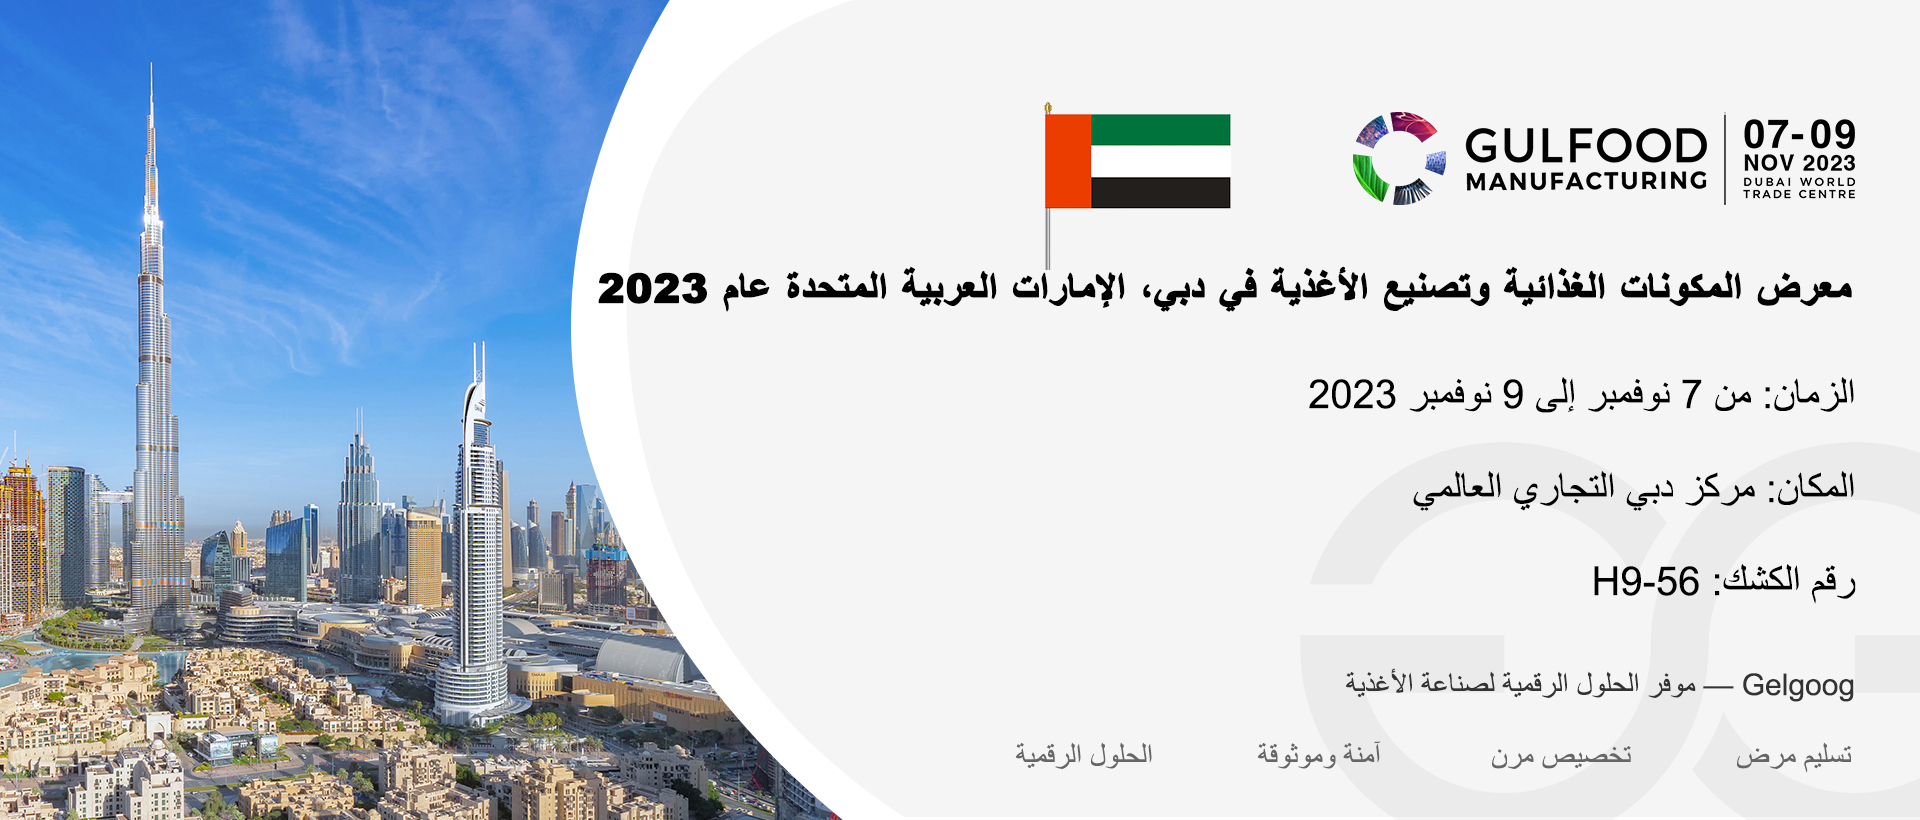 الإمارات العربية المتحدة معرض دبي لتجهيز الأغذية